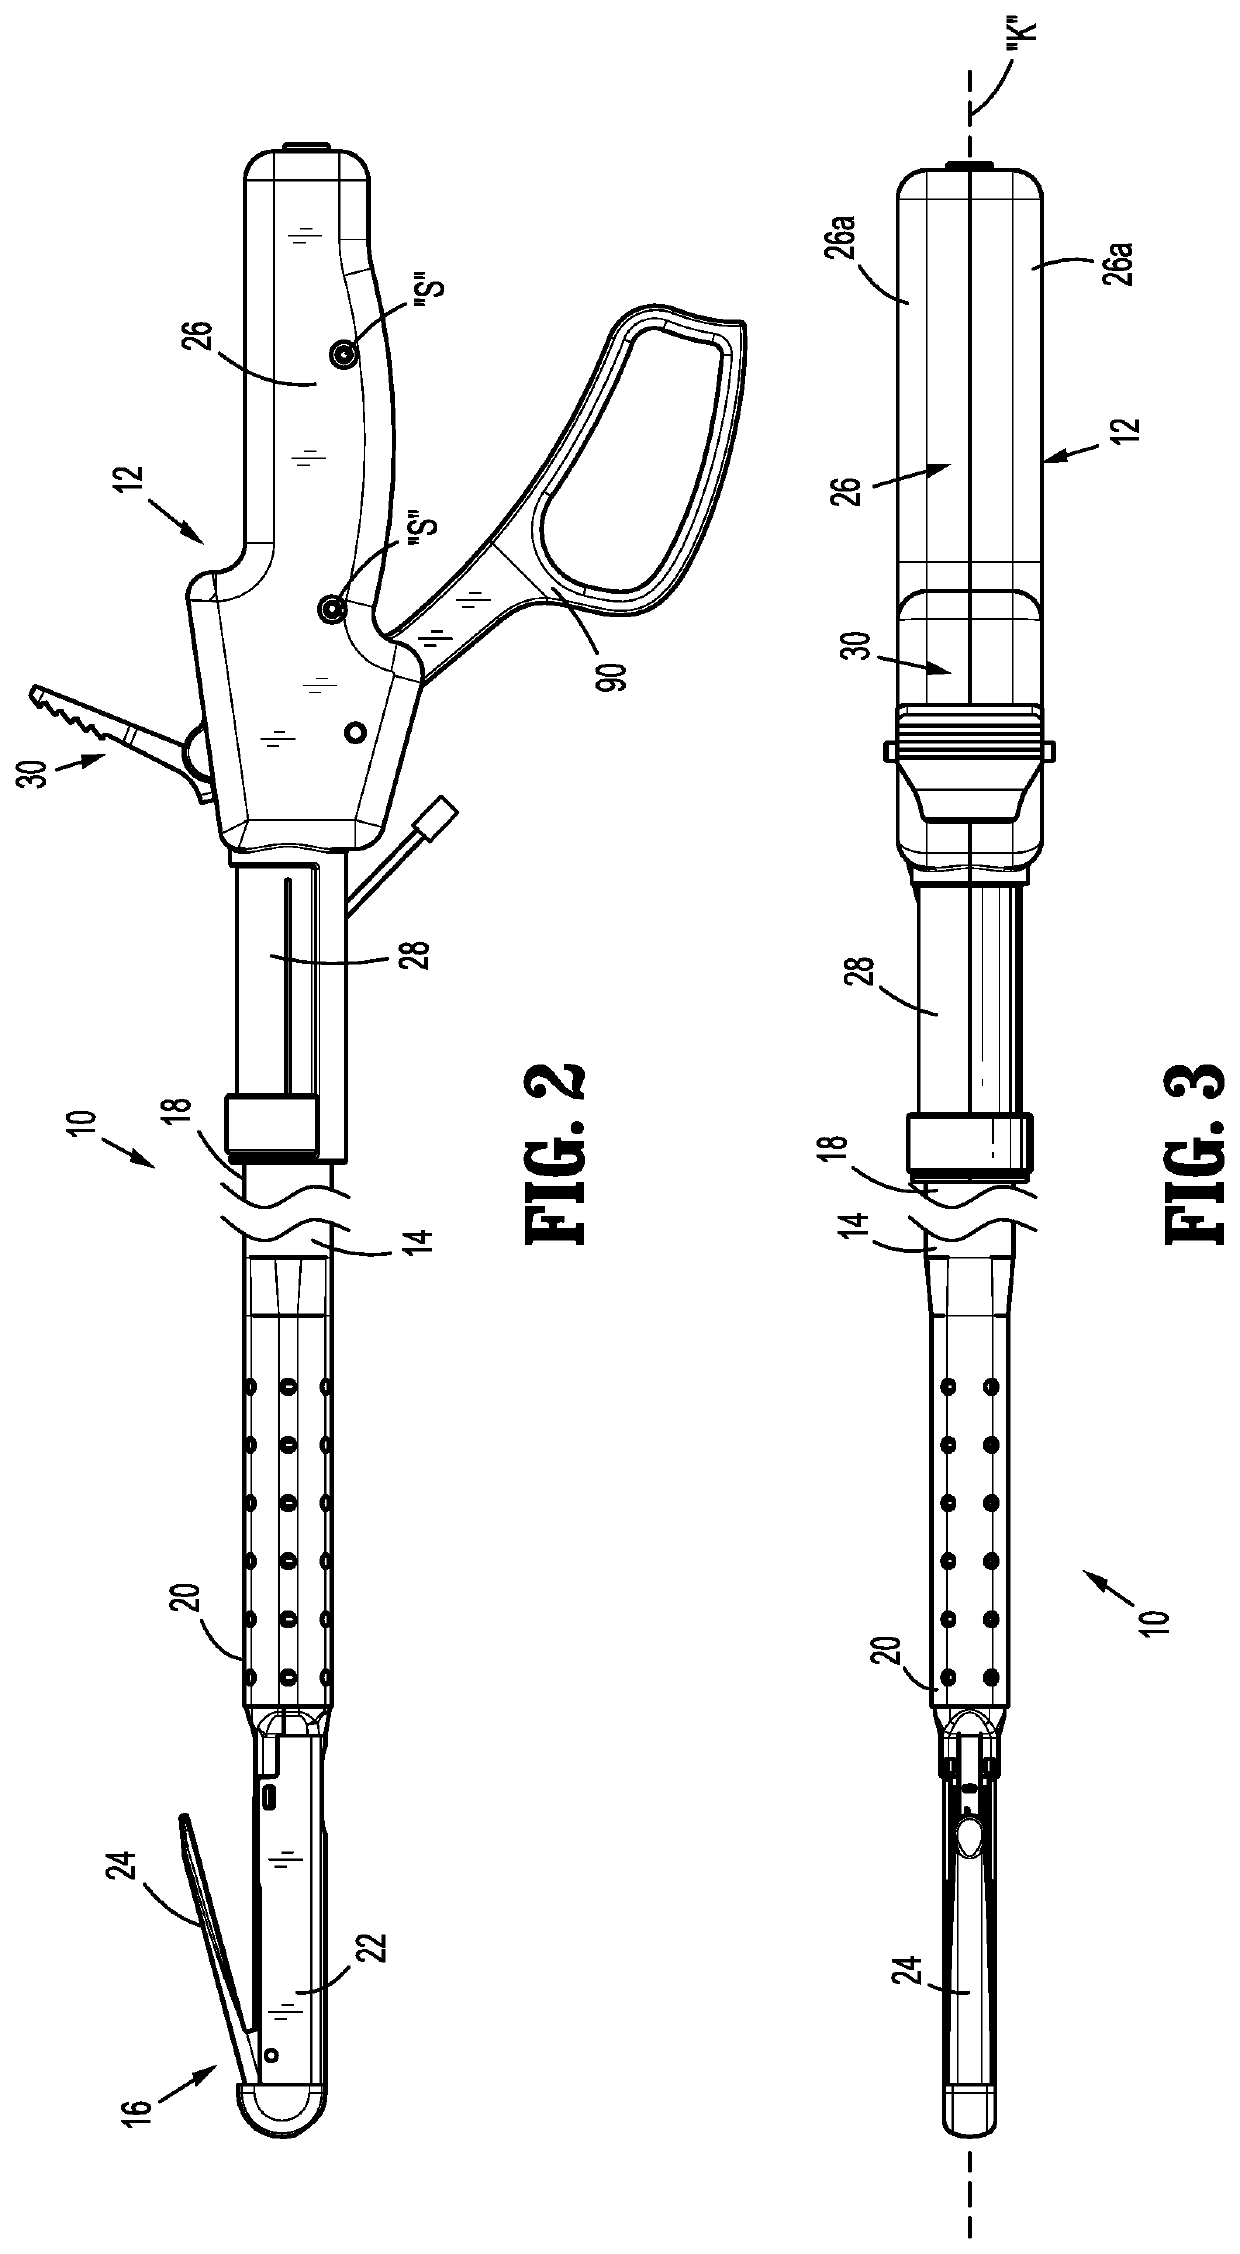 Surgical fastener apparatus